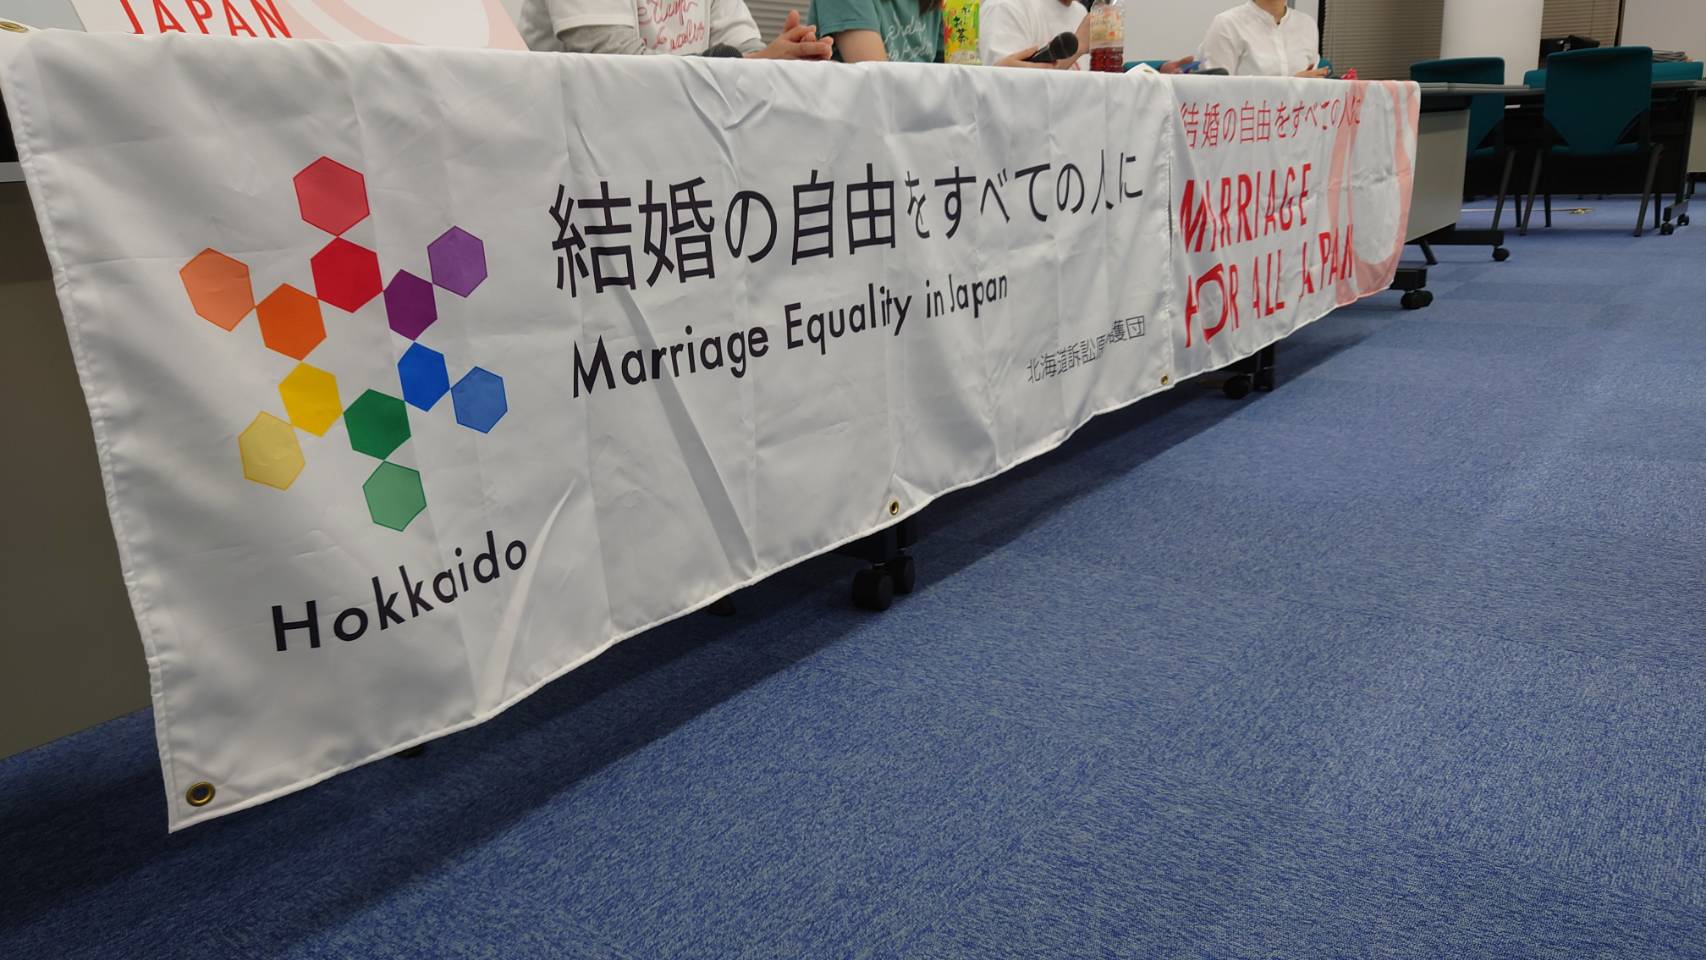 「結婚の自由をすべての人に」北海道訴訟 控訴審第5回口頭弁論期日後に開催された交流会の様子。机が置いてあり、机に、「結婚の自由をすべての人に」などと書かれた横断幕がかけられている。